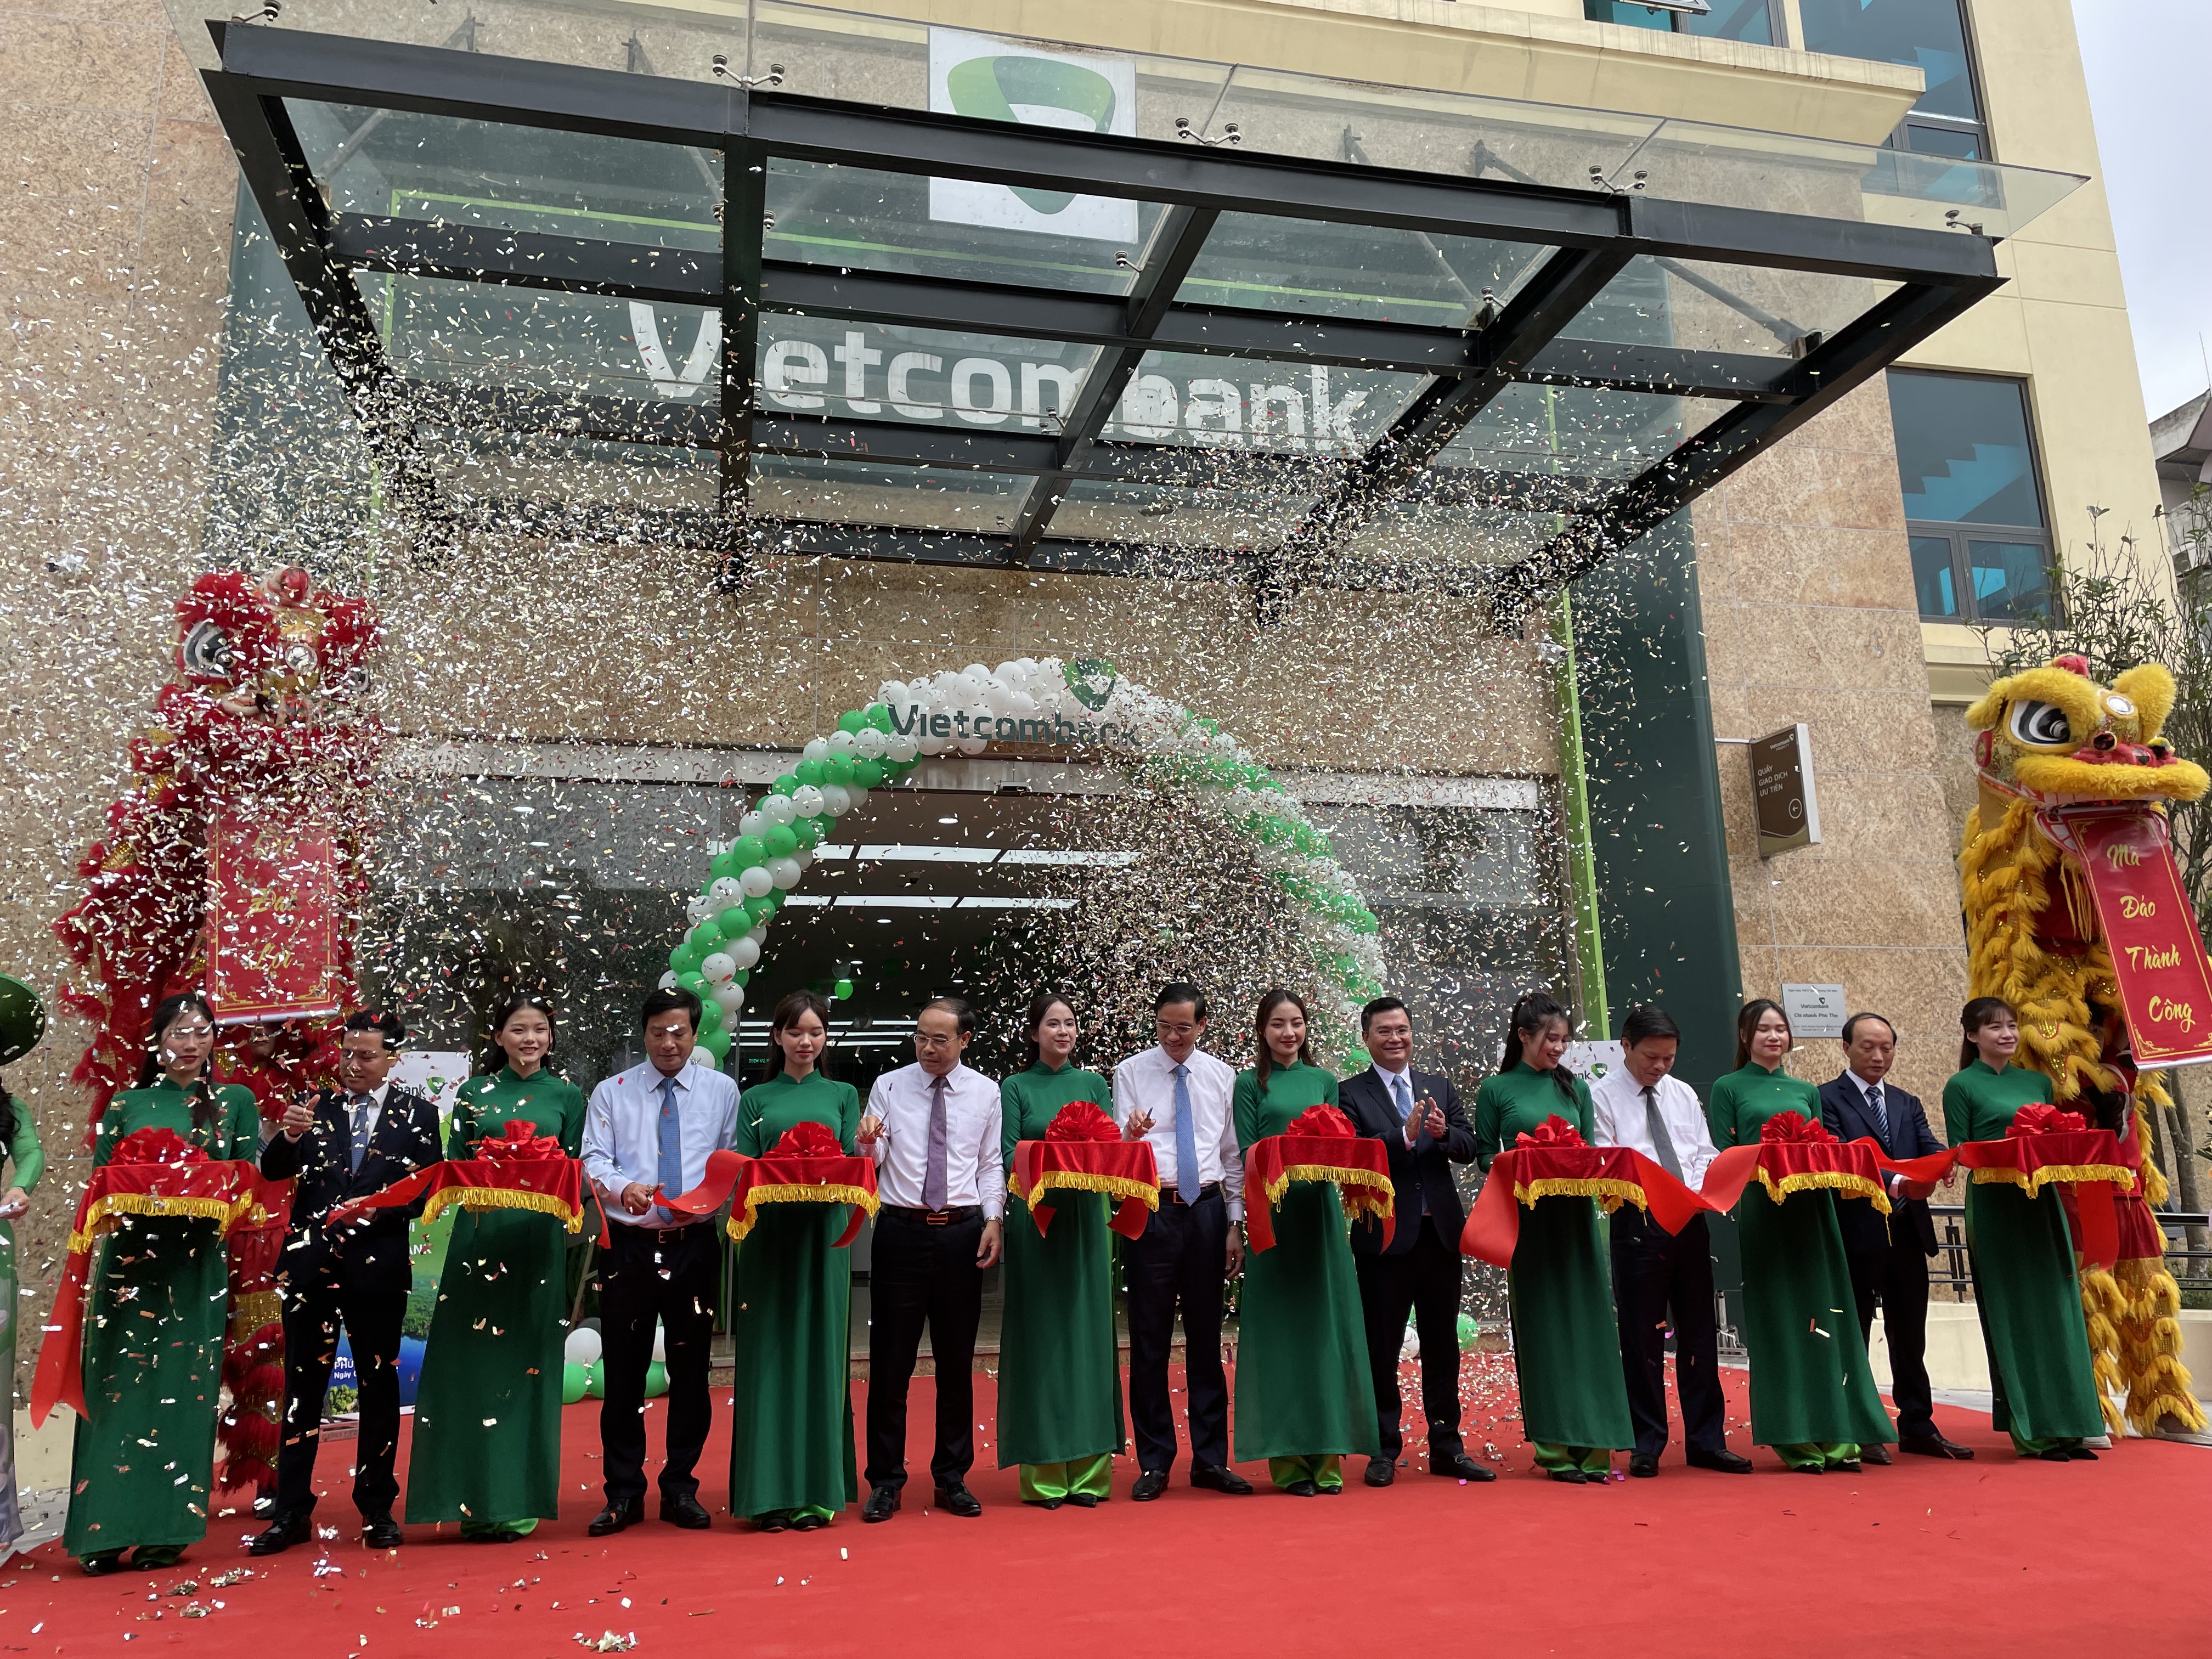 Kinh doanh - Vietcombank Phú Thọ khánh thành trụ sở hoạt động mới